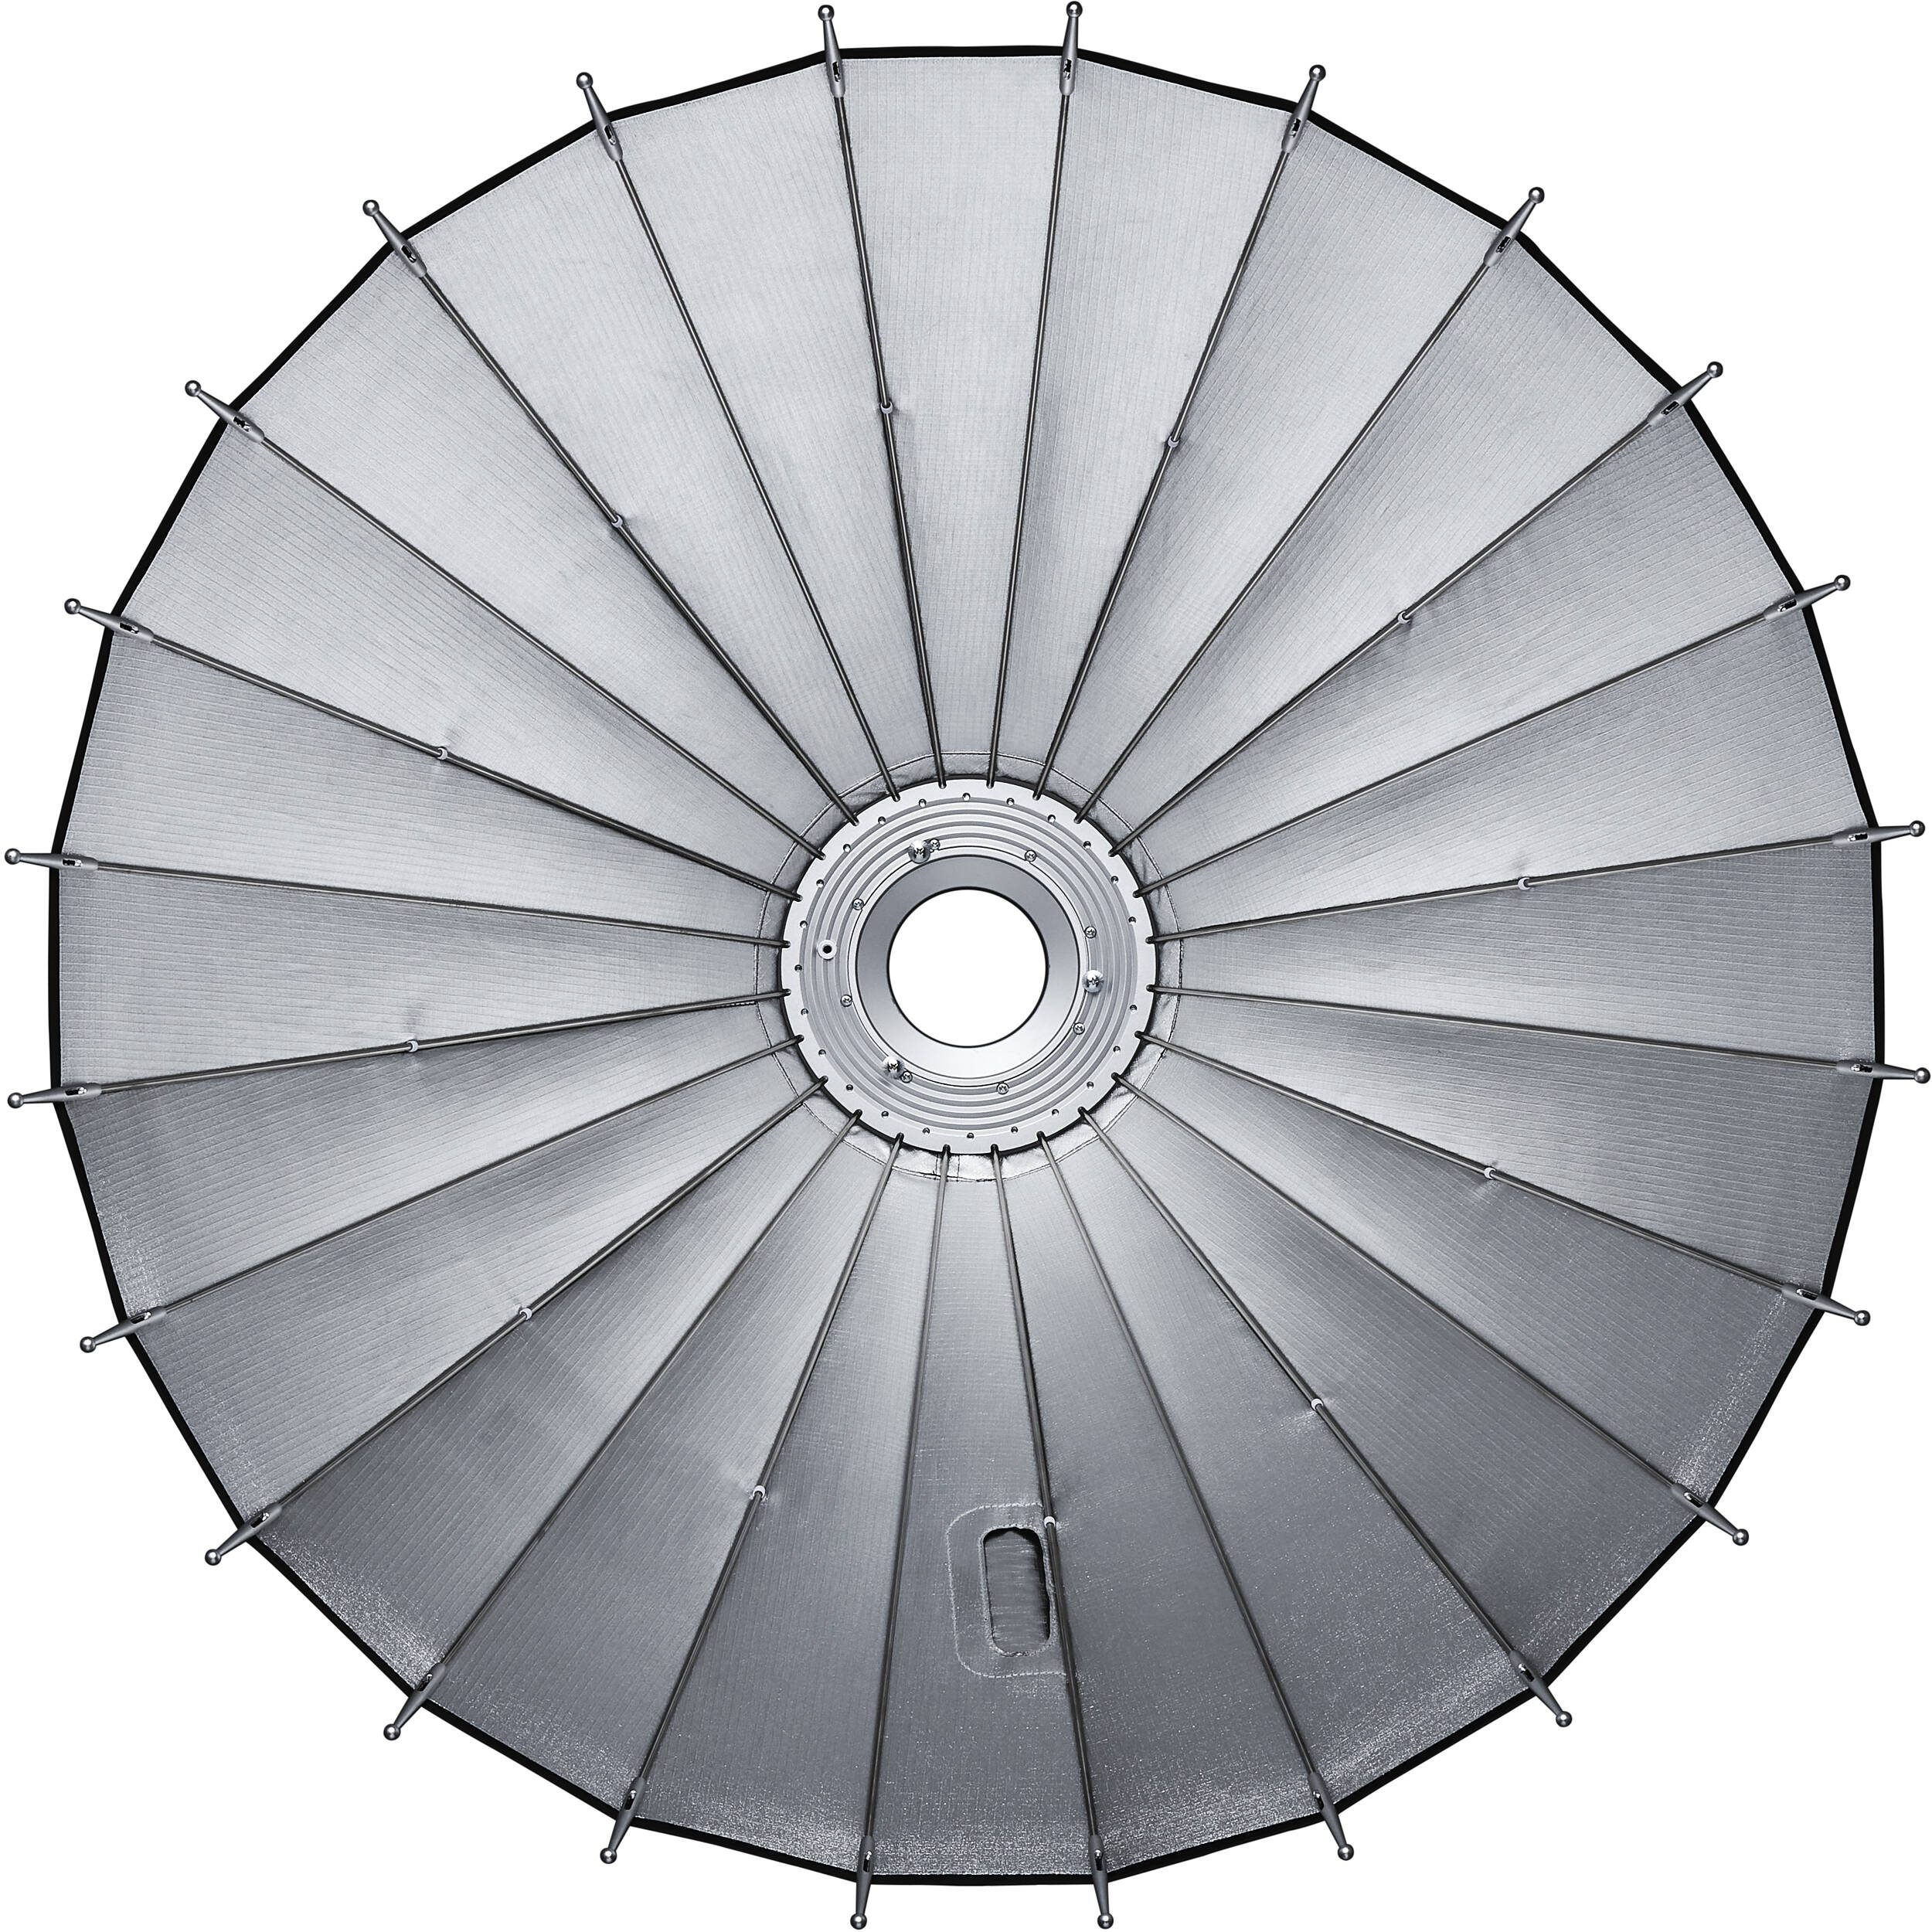 картинка Рефлектор параболический Godox Parabolic P88Kit комплект из Рефлекторы от магазина Mif-Bond